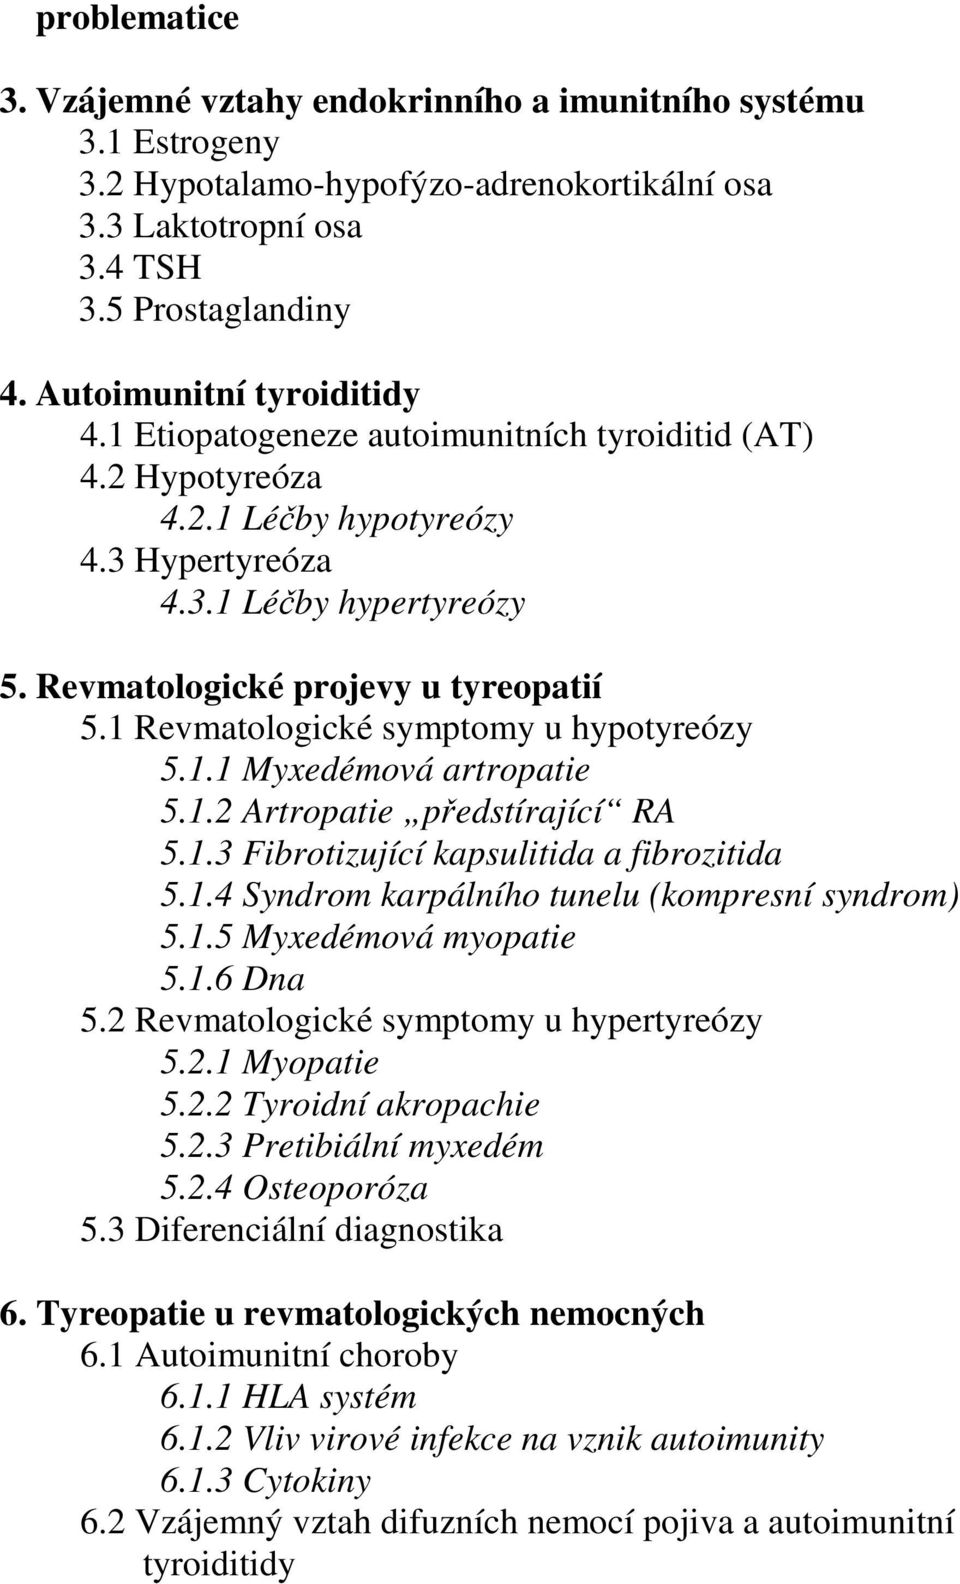 1 Revmatologické symptomy u hypotyreózy 5.1.1 Myxedémová artropatie 5.1.2 Artropatie předstírající RA 5.1.3 Fibrotizující kapsulitida a fibrozitida 5.1.4 Syndrom karpálního tunelu (kompresní syndrom) 5.